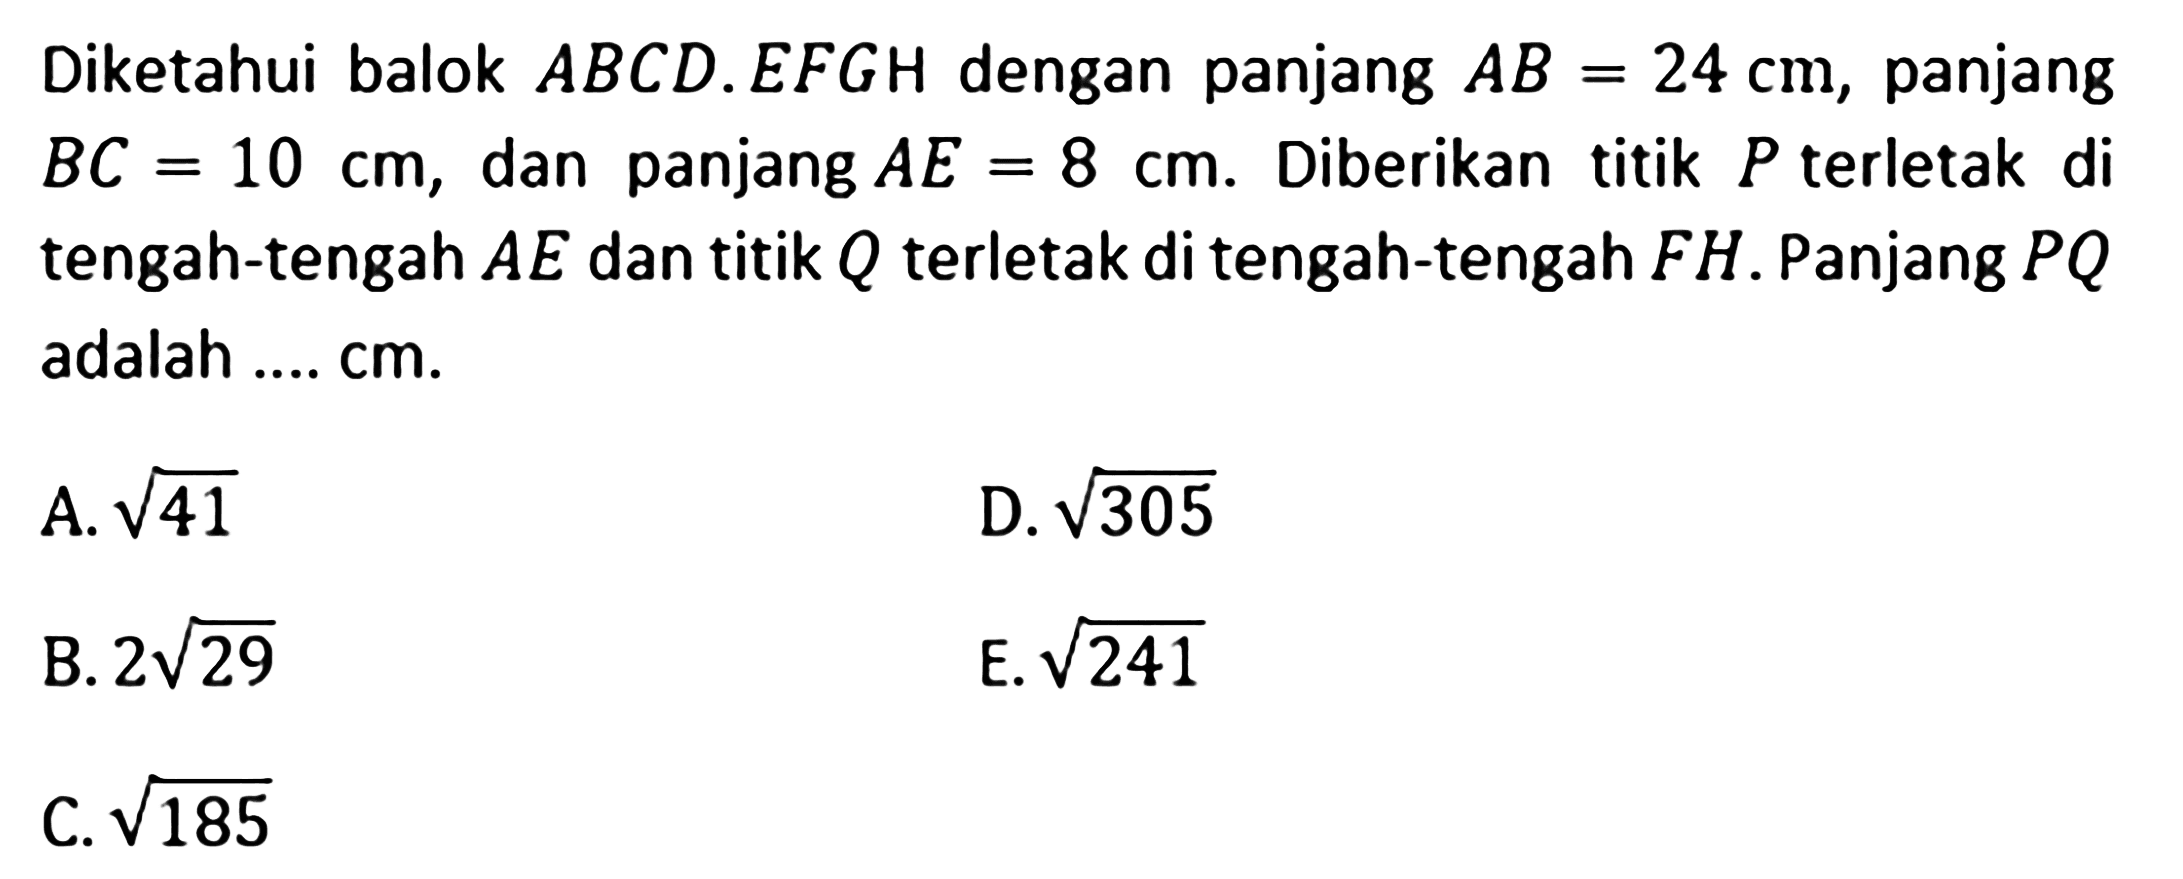 Diketahui balok ABCD.EFGH dengan panjang AB=24 cm, panjang BC=10 cm, dan panjang AE=8 cm. Diberikan titik P terletak di tengah-tengah AE dan titik Q terletak di tengah-tengah FH. Panjang PQ adalah .... cm. A akar(41) D. akar(305) B. 2 akar(29) E. akar(241) C. akar(185)